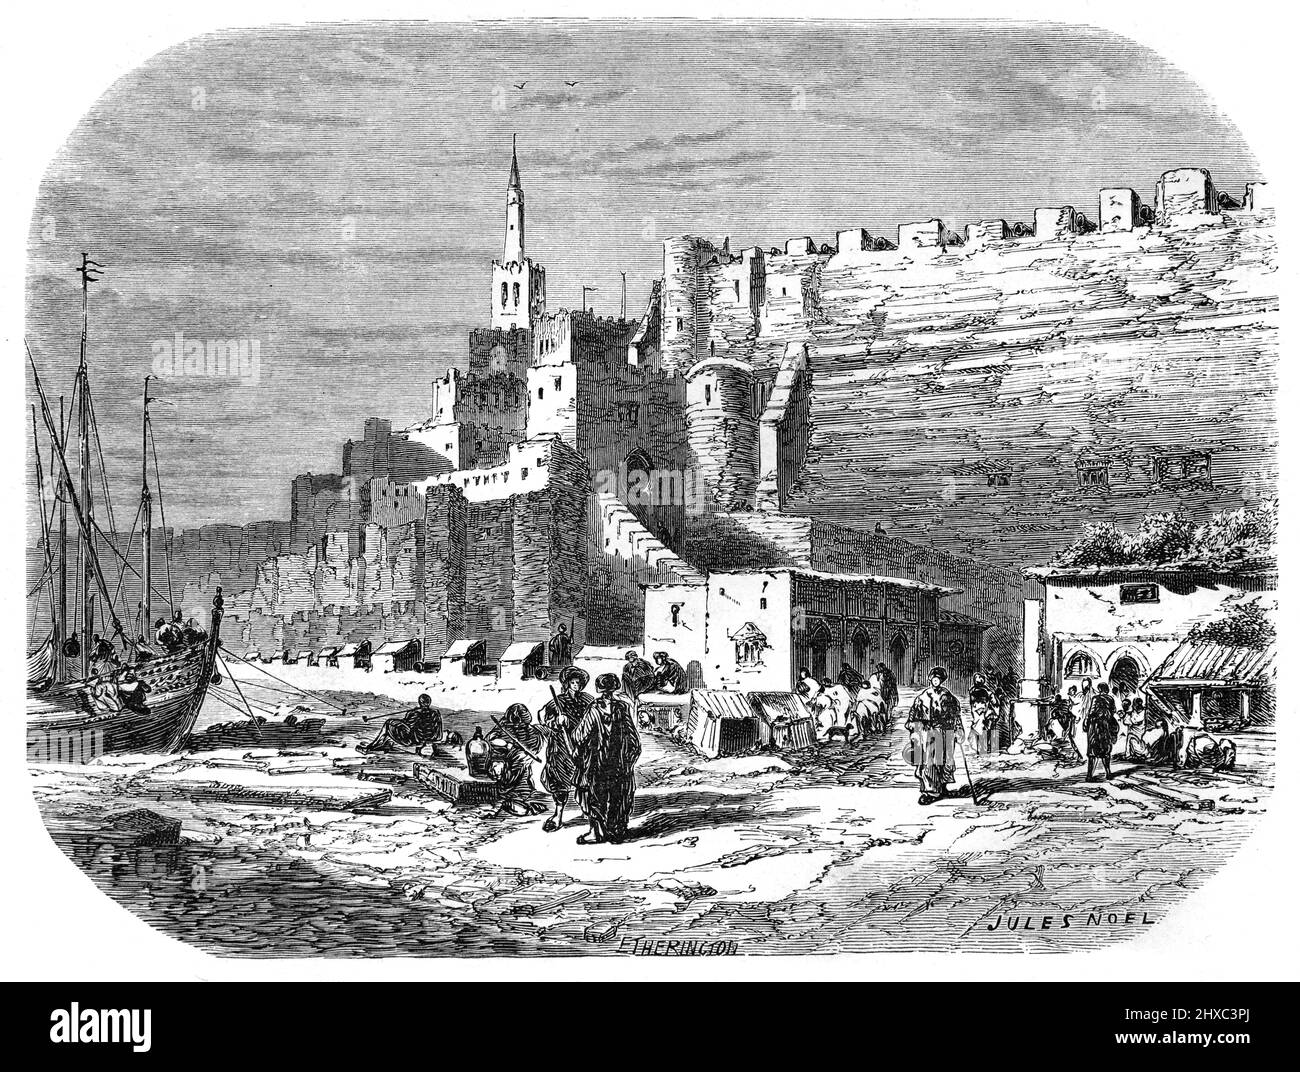 Am Wasser, Hafen, Hafen, Stadtmauern & die Altstadt oder das historische Viertel Tanger Marokko. Vintage Illustration oder Gravur 1860 Stockfoto